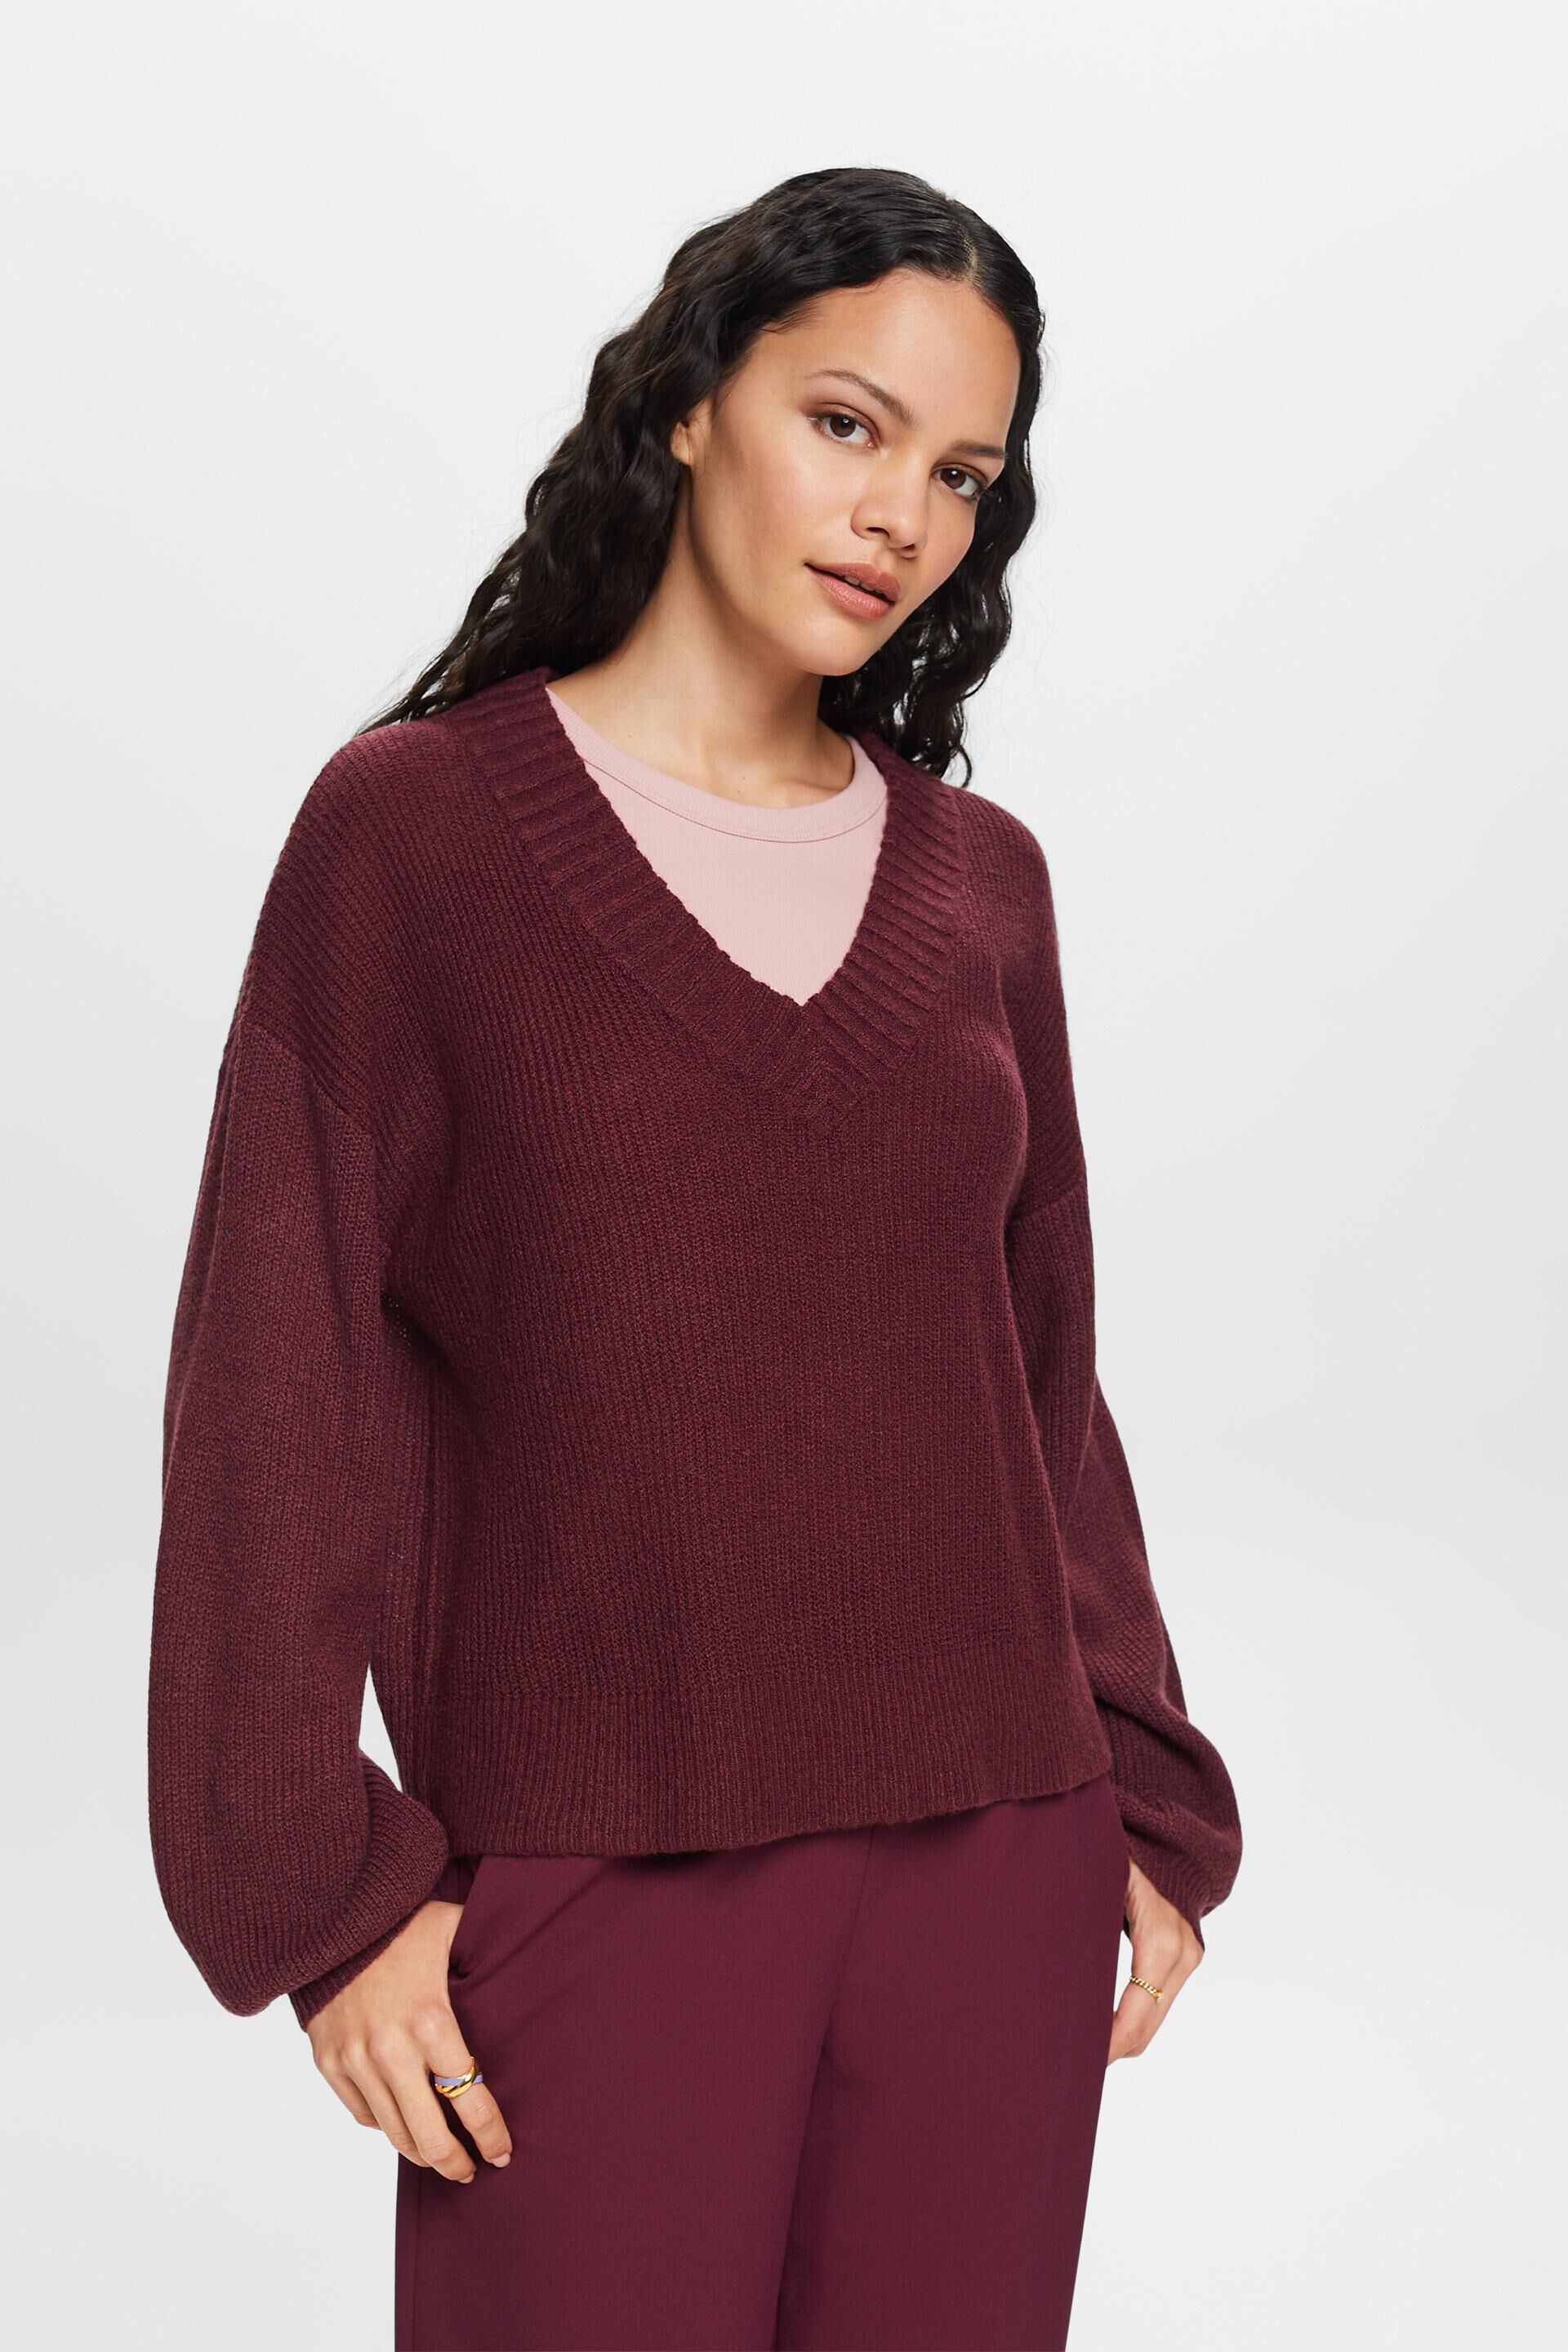 Esprit Damen V-neck jumper, wool blend